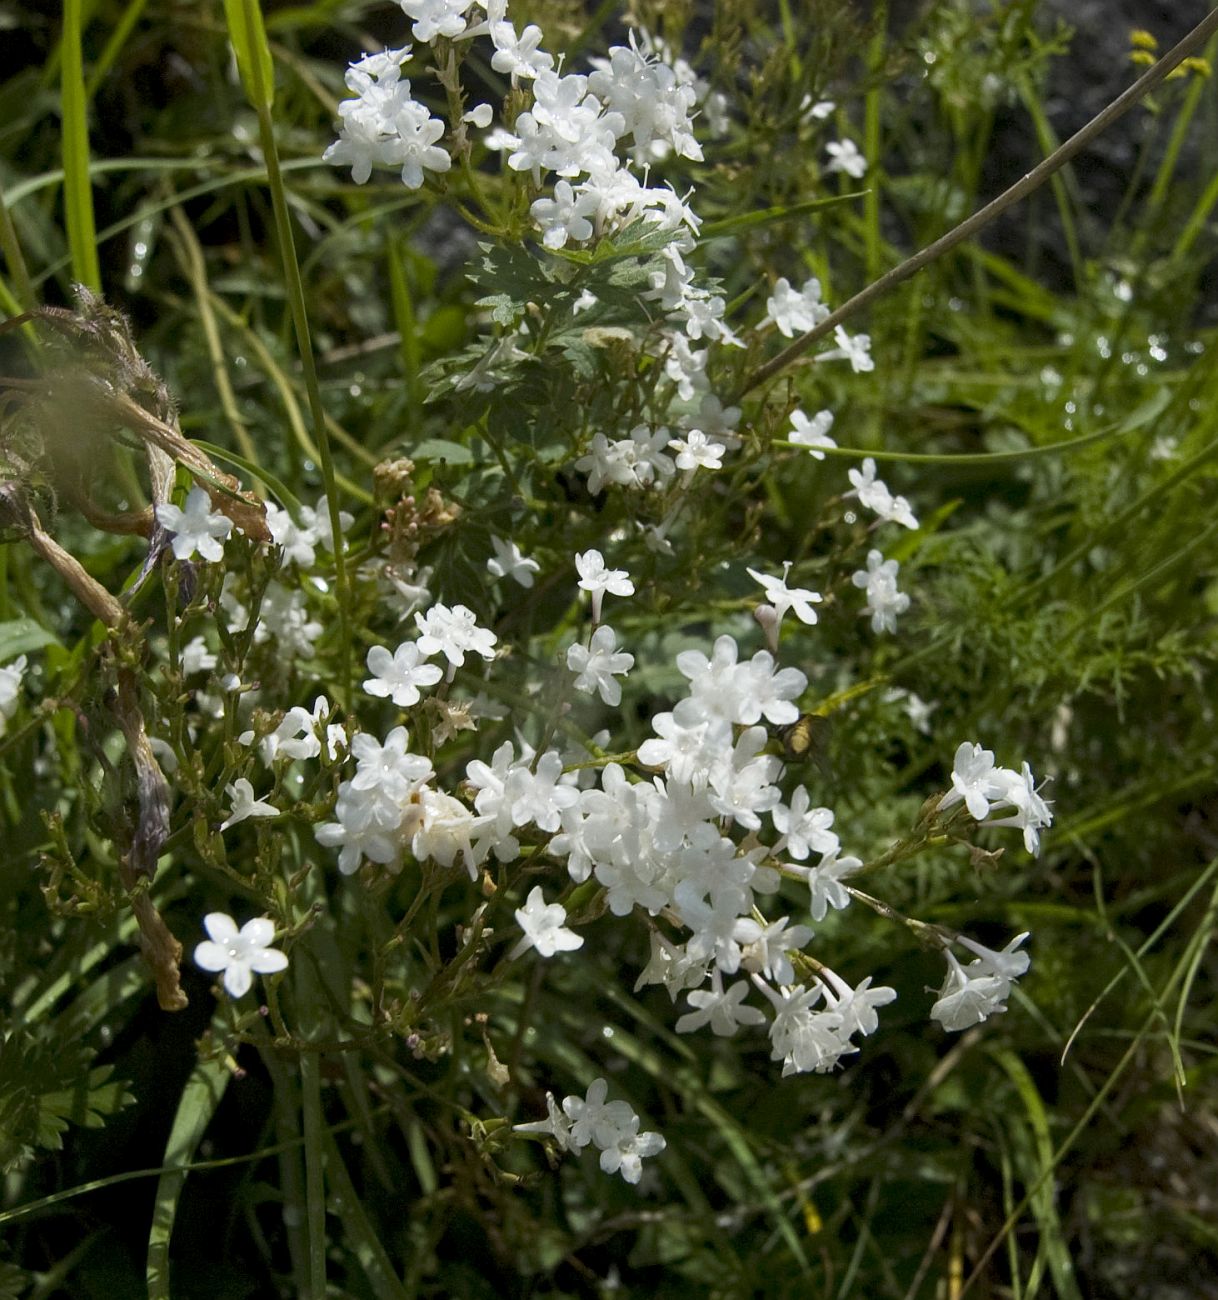 Image of genus Valeriana specimen.